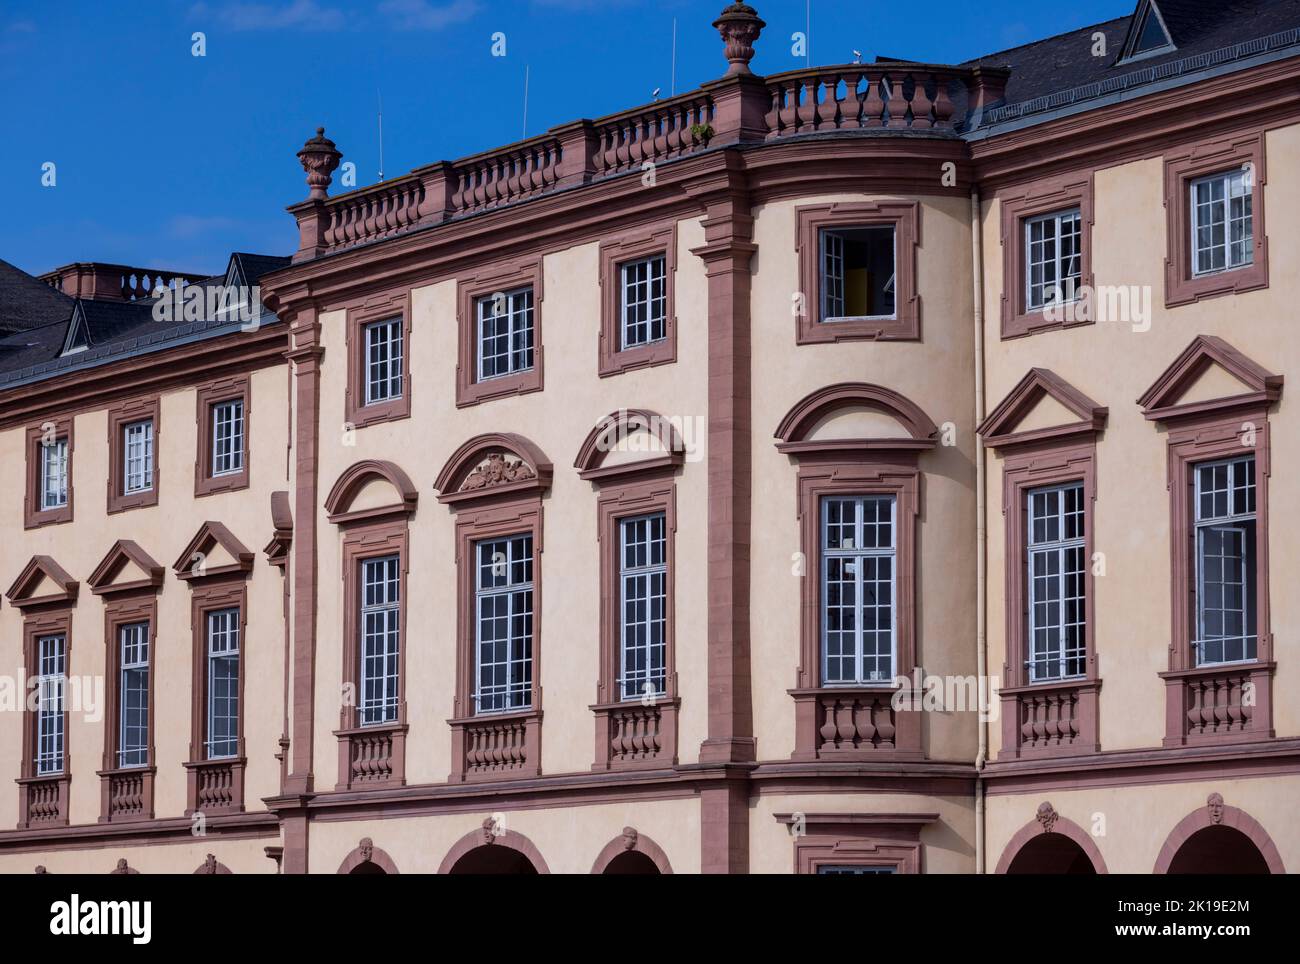 Mannheim Palace (Mannheimer Schloss), Mannheim, Germany Stock Photo